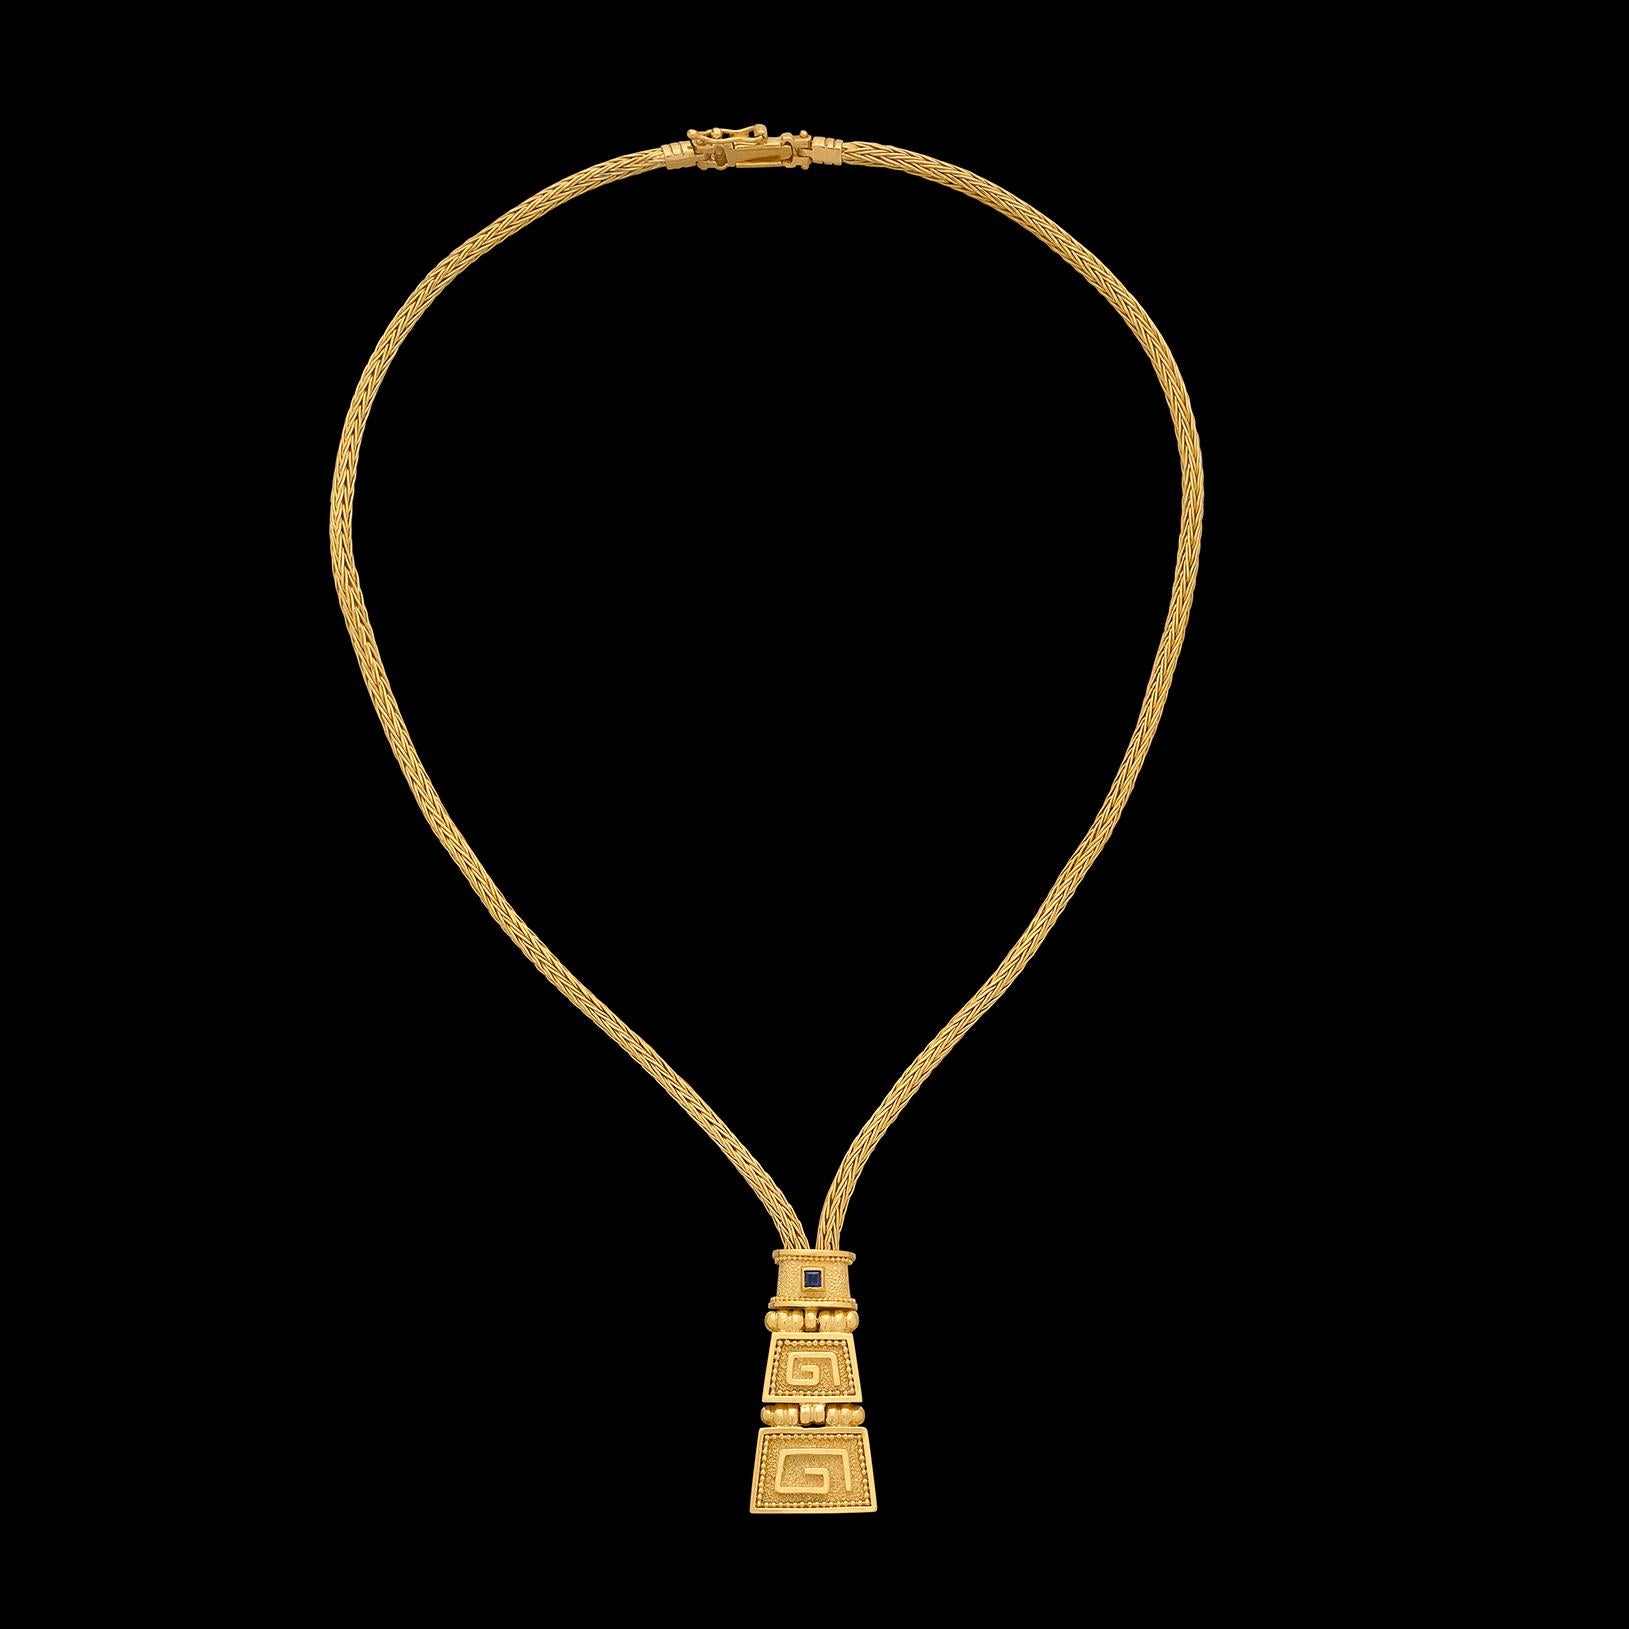 Ein echter Hingucker! Diese Halskette aus 18 Karat Gelbgold besteht aus einer goldenen Twist-Kette, an der ein Anhänger mit griechischem Muster hängt. In den goldenen Anhänger ist ein einzelner blauer Saphir eingelassen, der für den perfekten